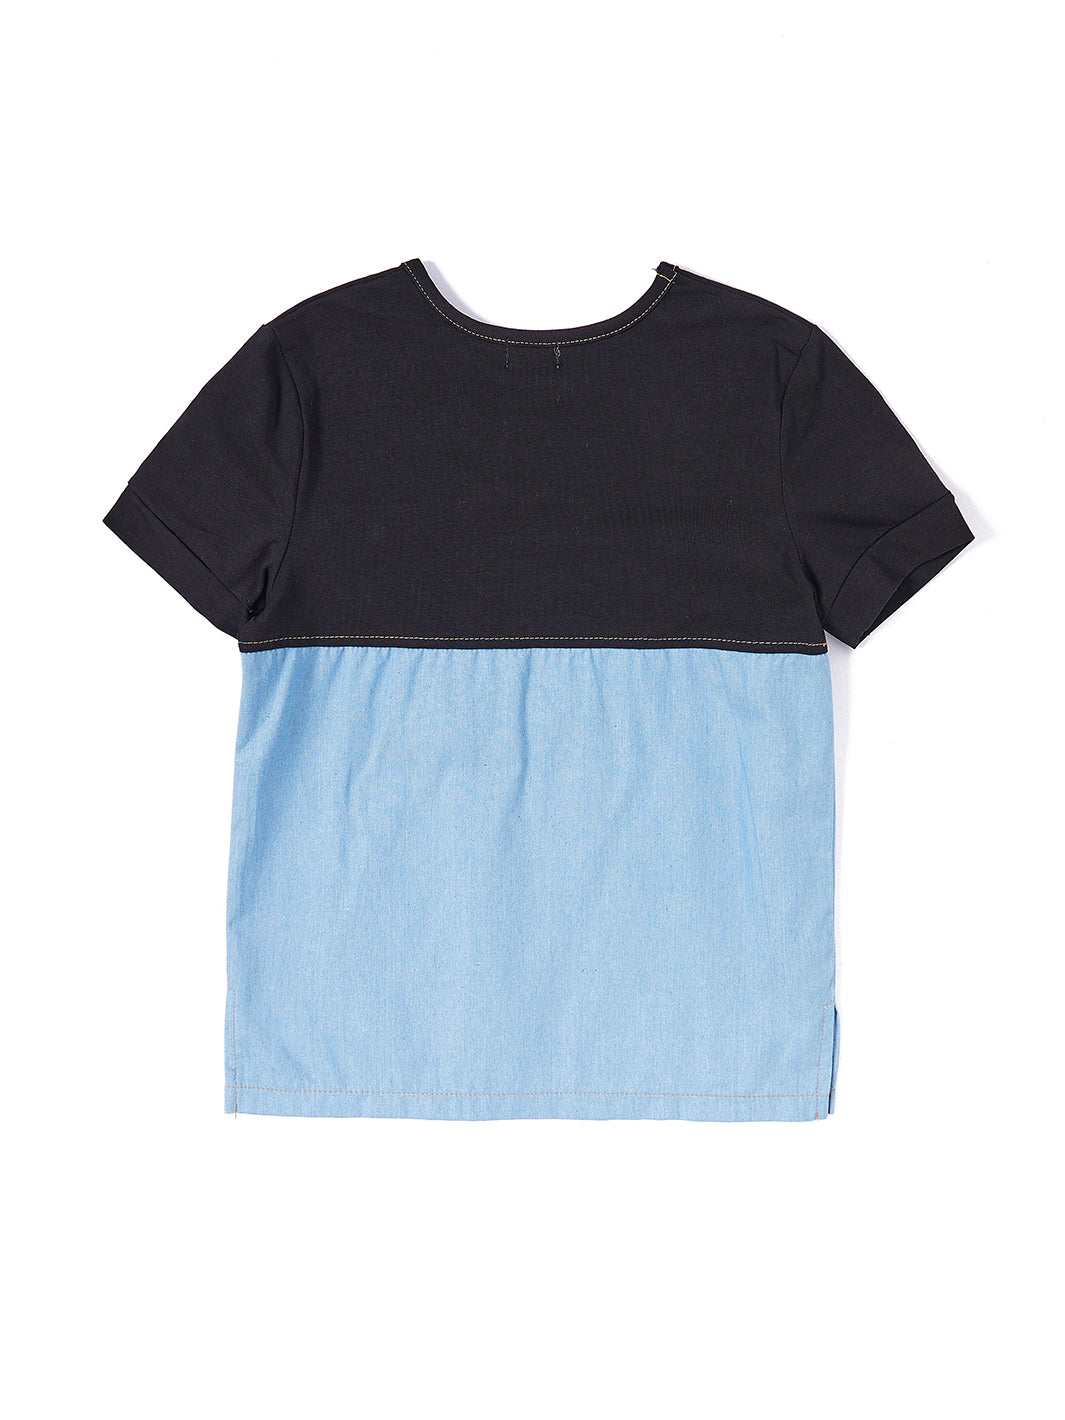 Combo Bottom Short Sleeve T-shirt - Black Combo Lt. Blue